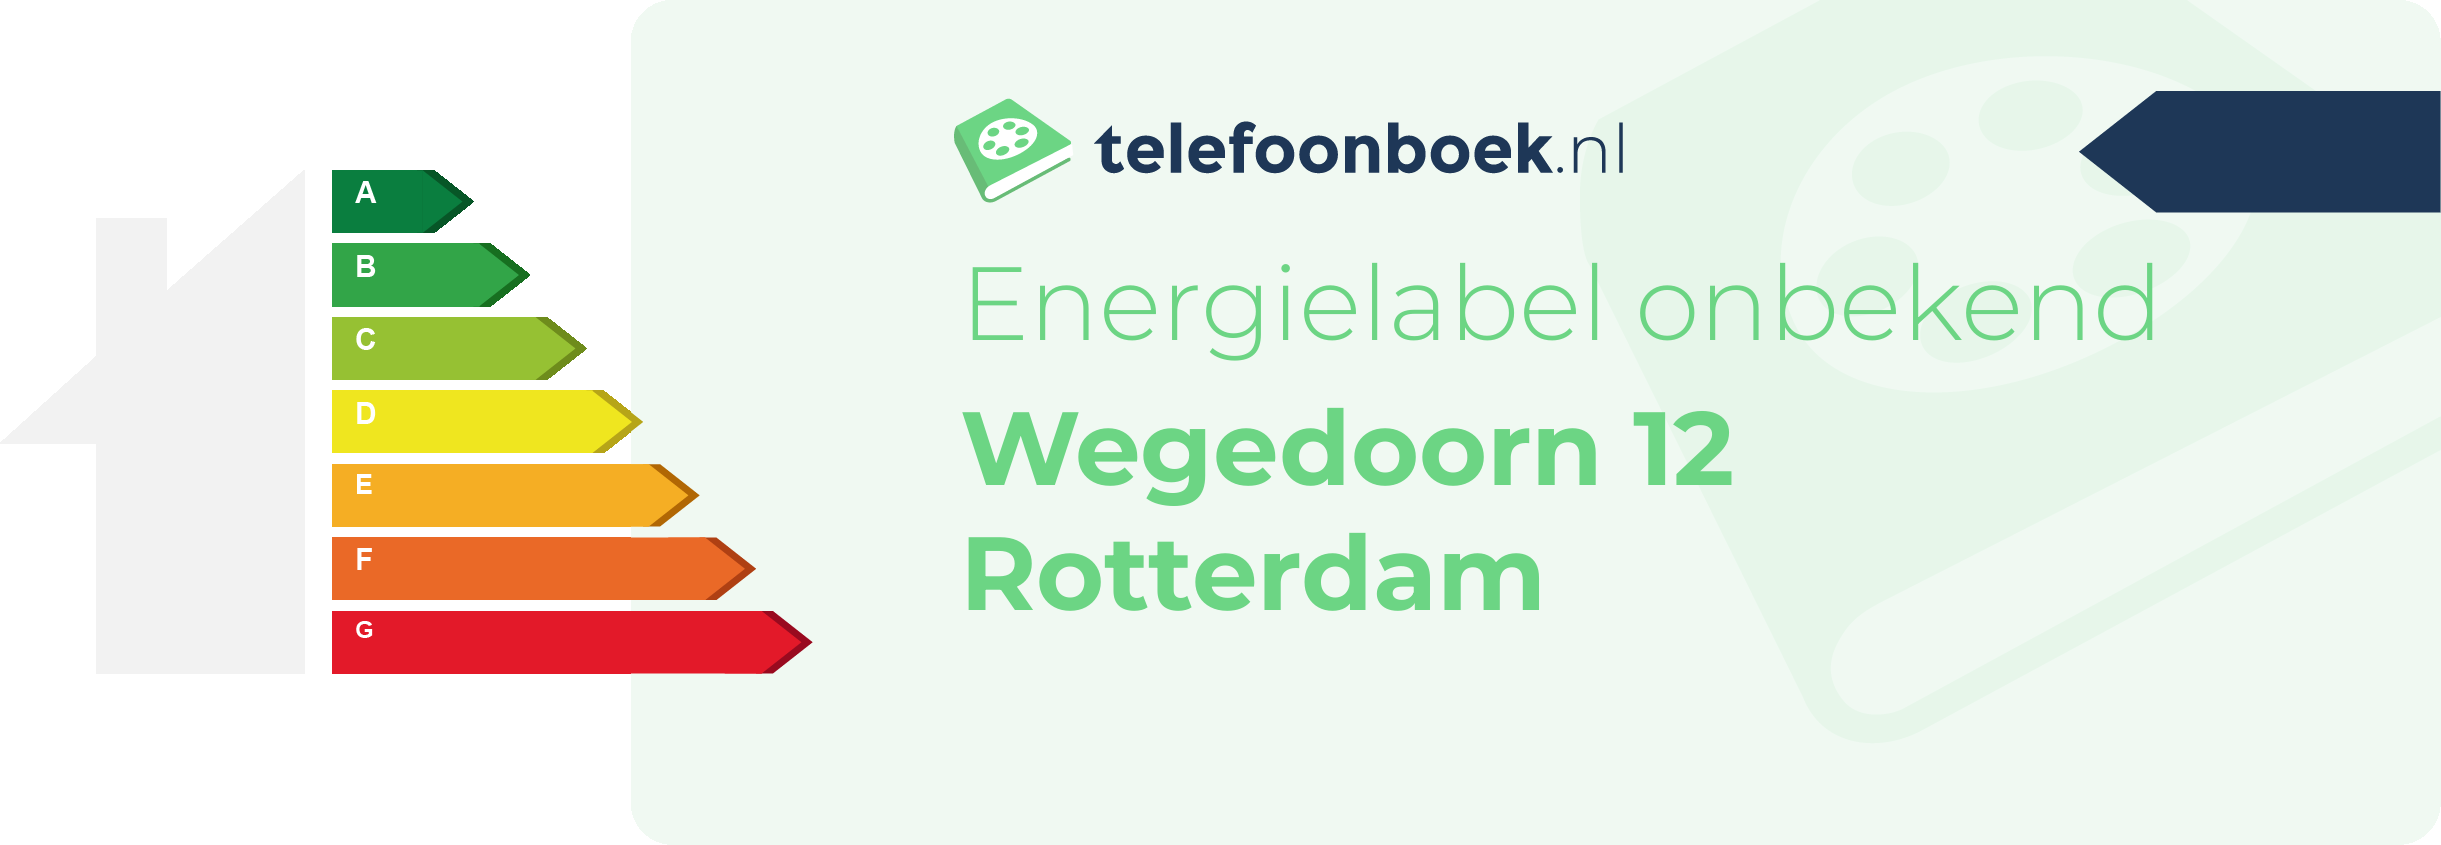 Energielabel Wegedoorn 12 Rotterdam